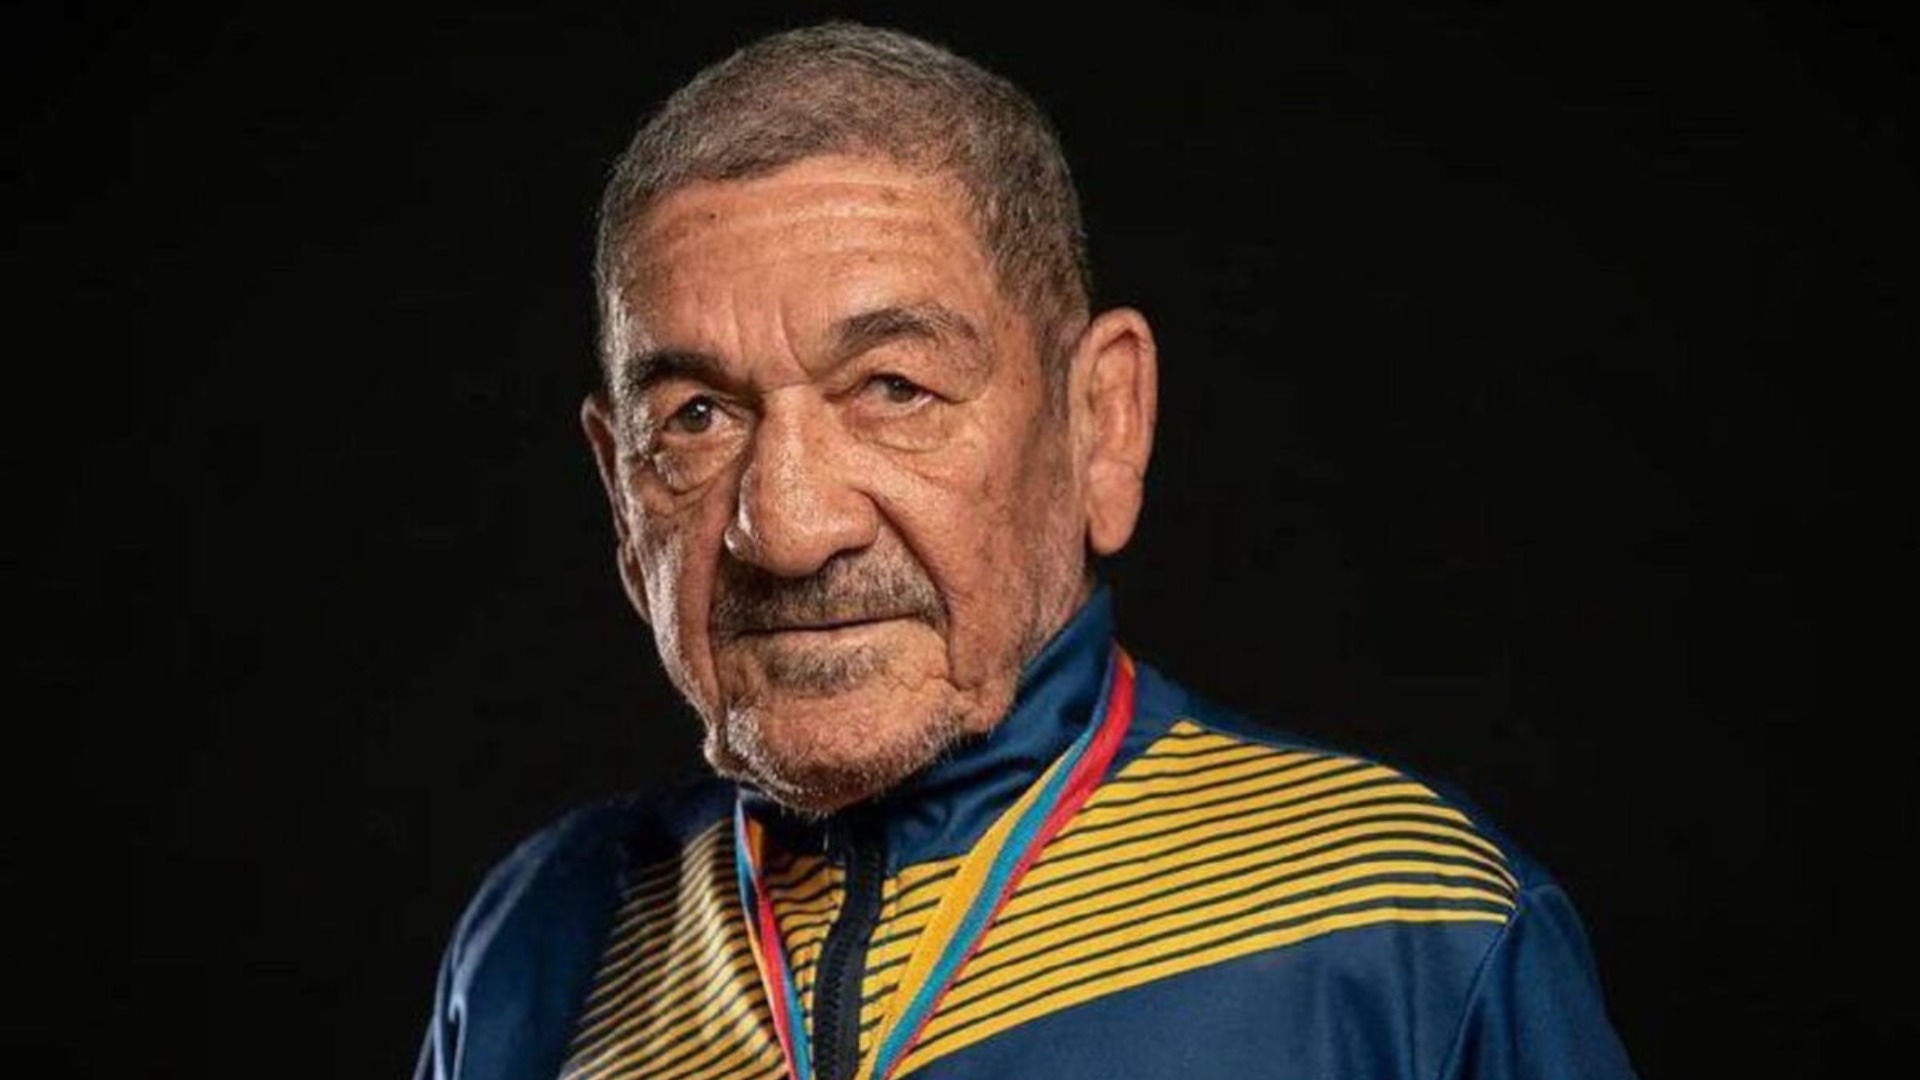 El primer medallista de oro olímpico de Venezuela, el boxeador Francisco 'Morochito' Rodríguez, murió el martes en Caracas a los 78 años